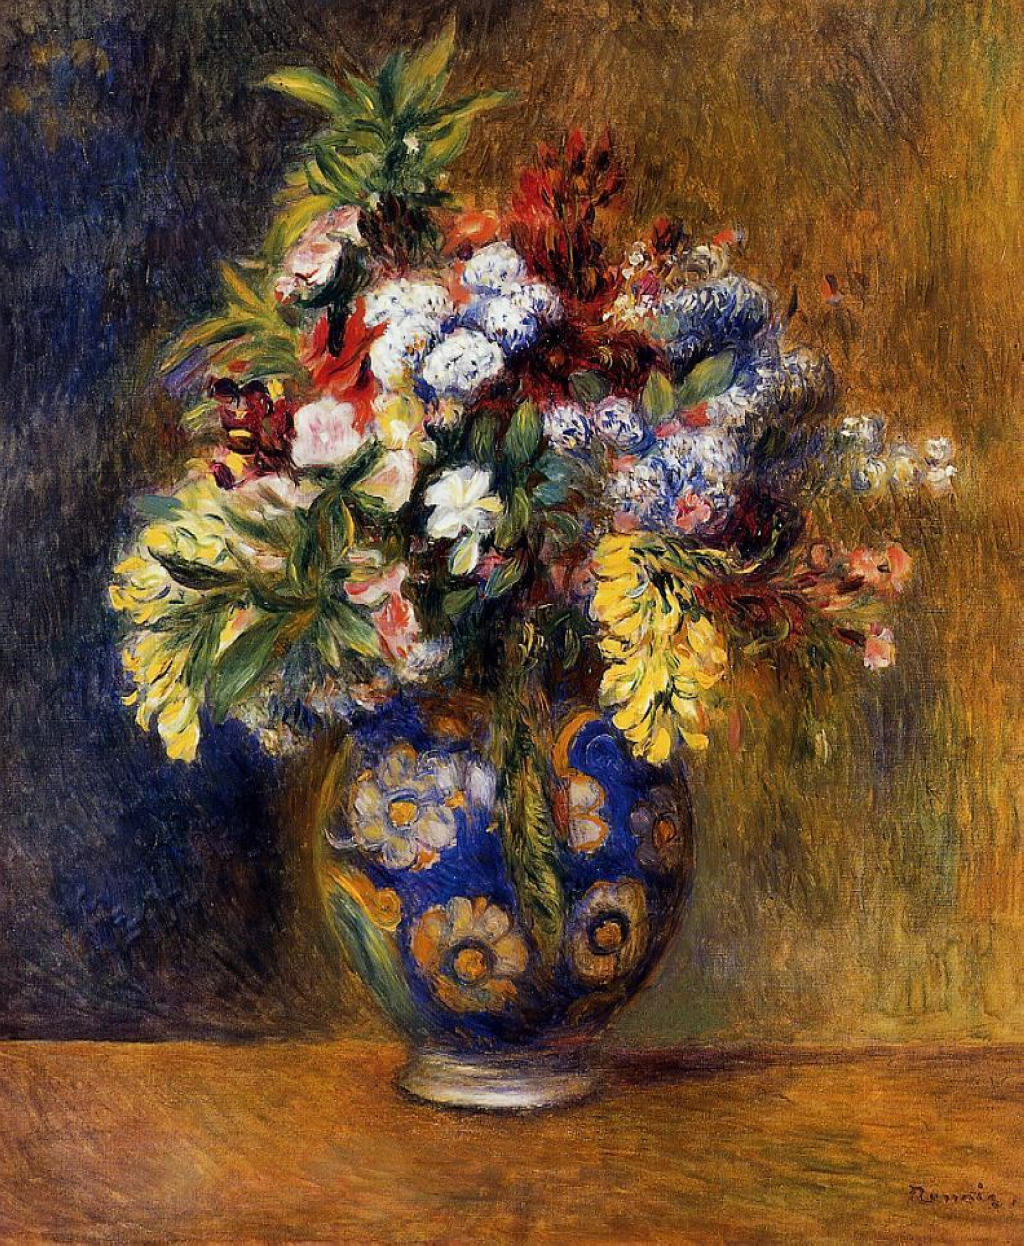 Pierre+Auguste+Renoir-1841-1-19 (170).jpg